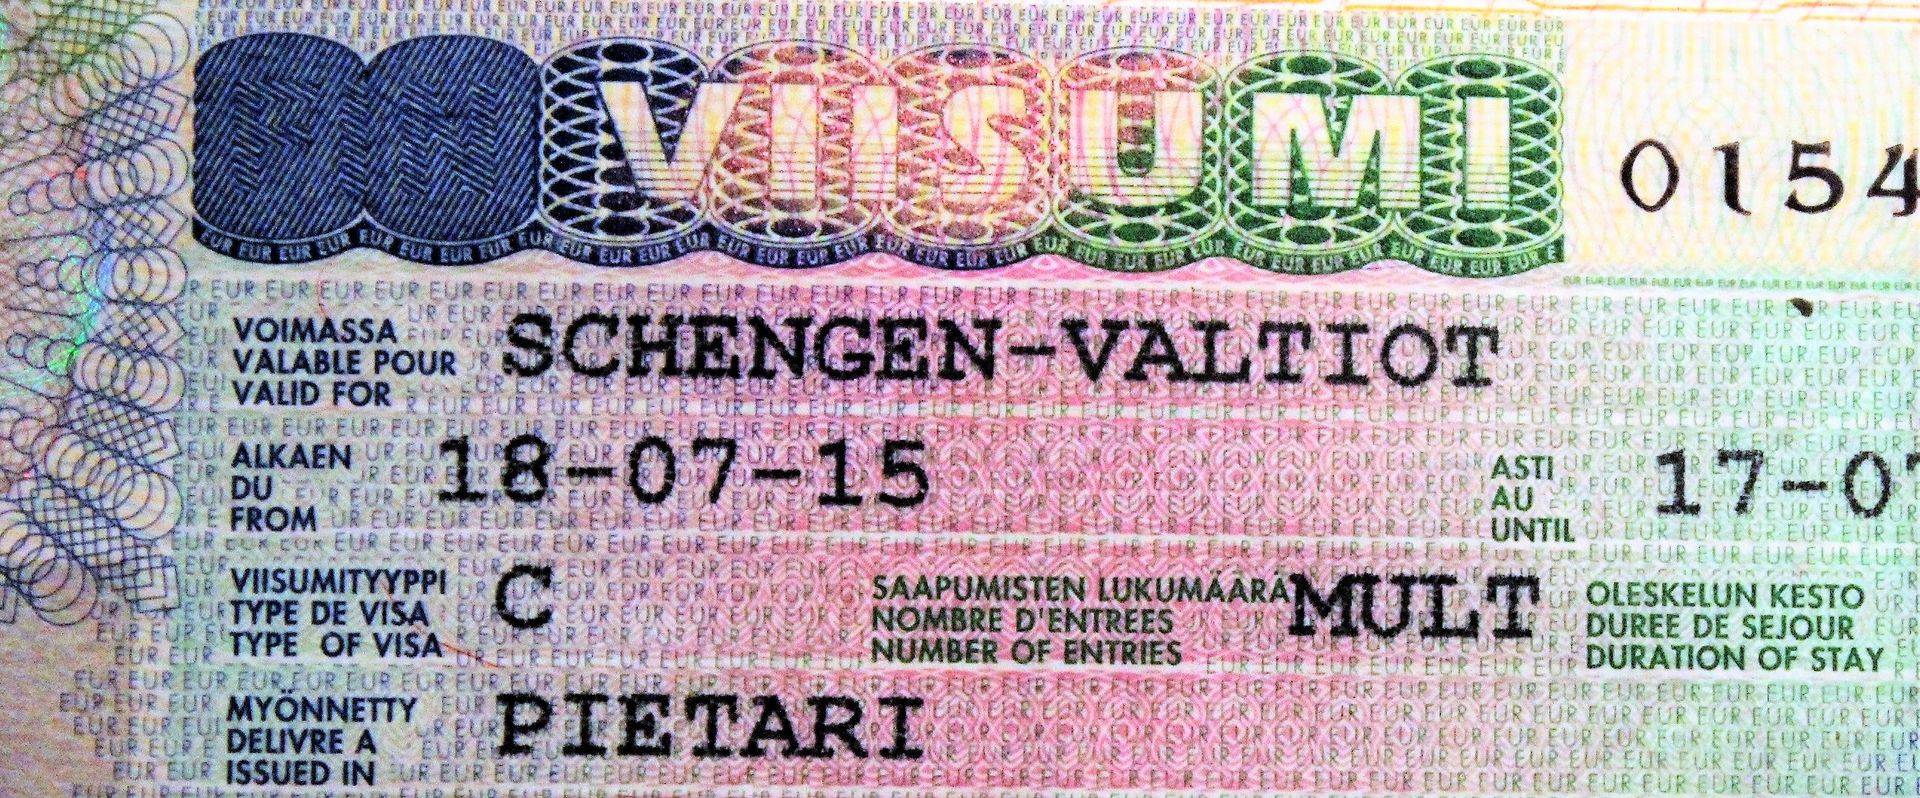 Шенгенская виза в финляндию — оформление 2021, документы, визовые центры